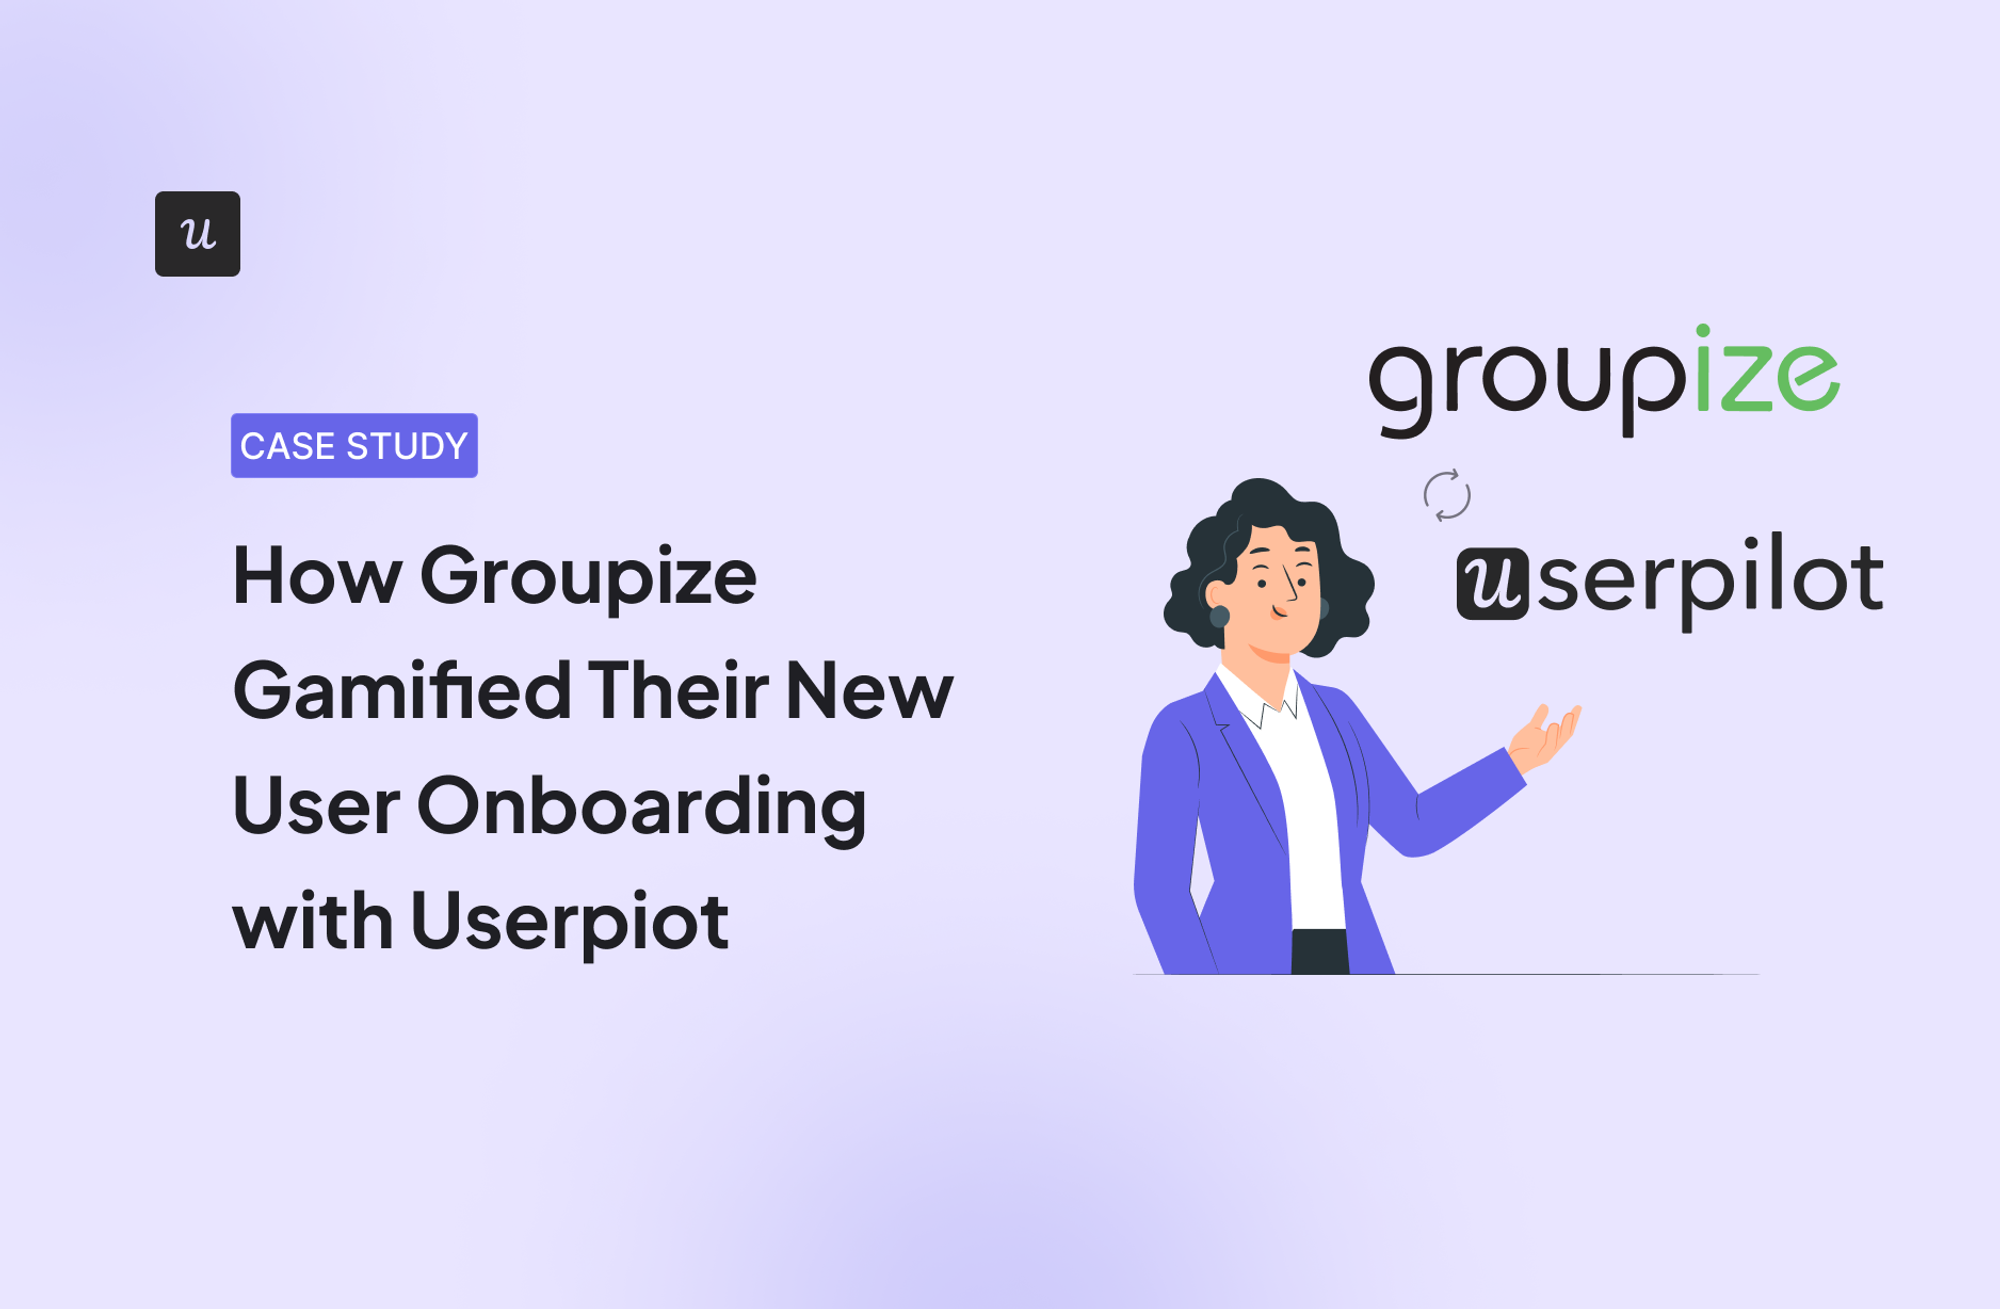 groupize disengaged users